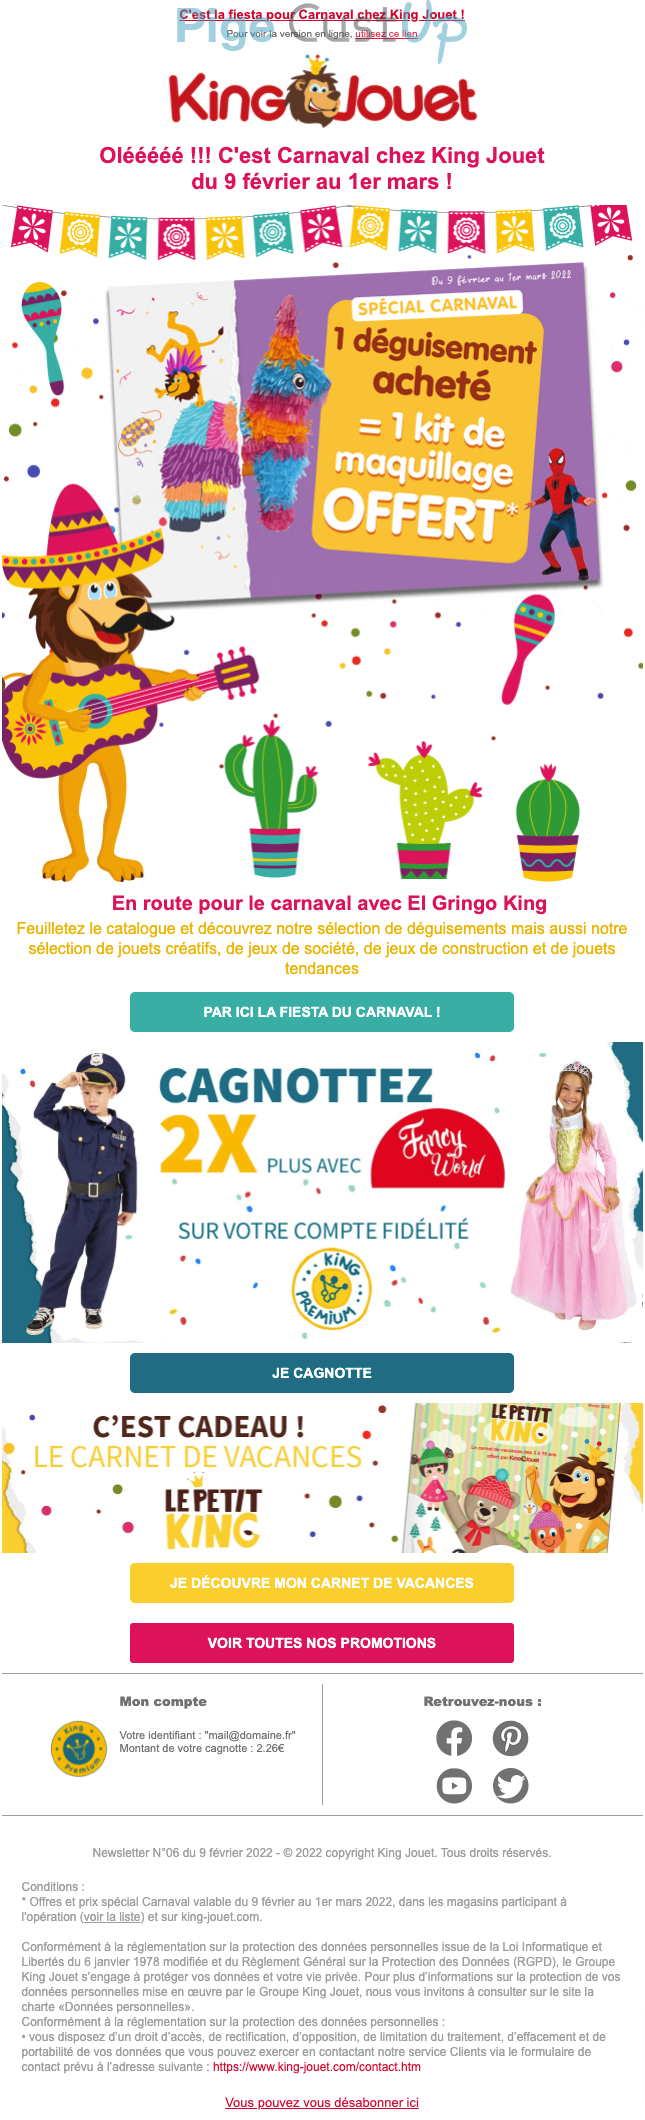 Exemple de Type de media   - King Jouet - Marketing relationnel - Calendaire (Noël, St valentin, Vœux, …)